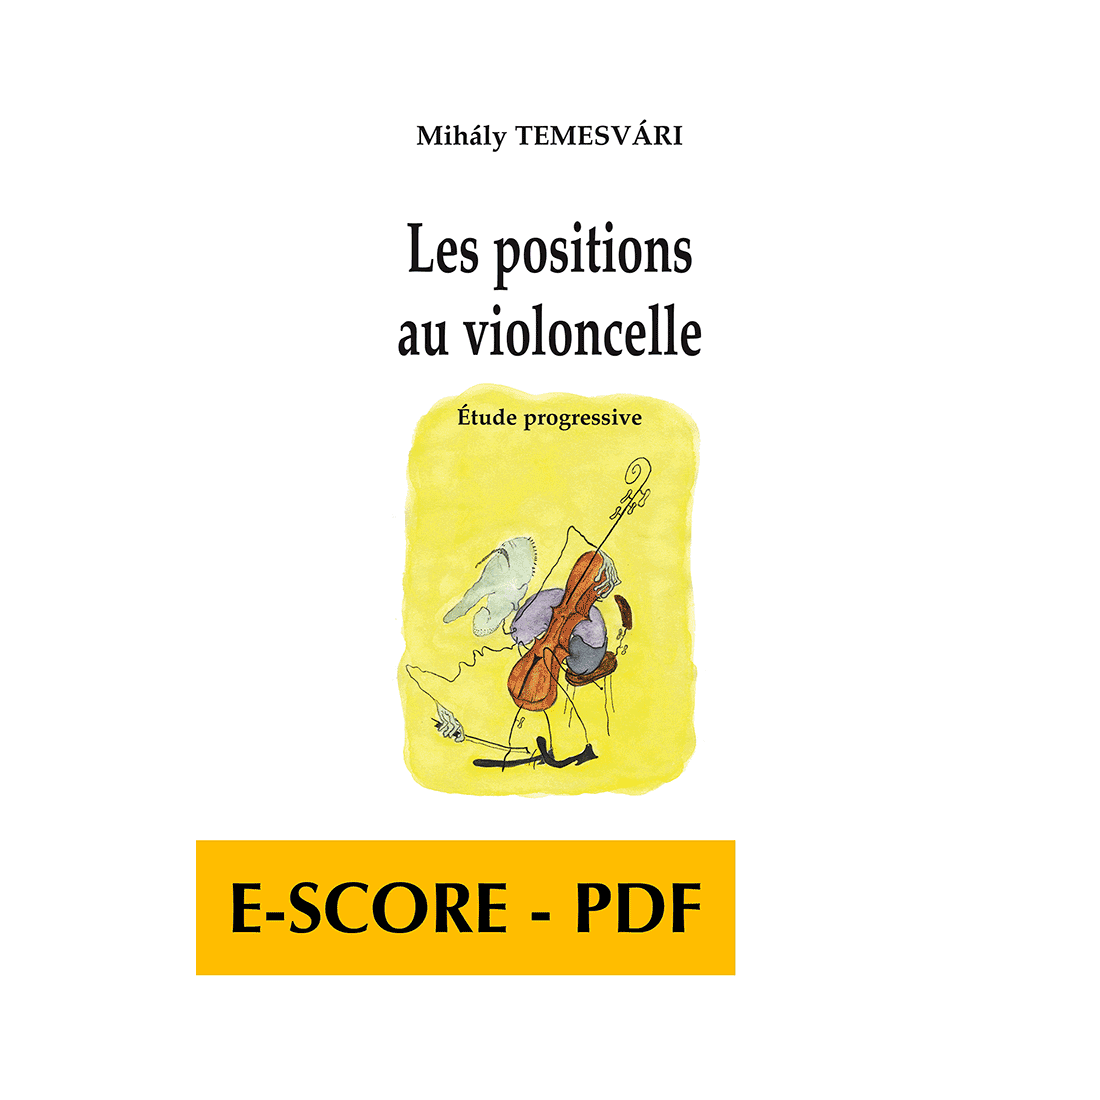 Les positions au violoncelle - E-score PDF